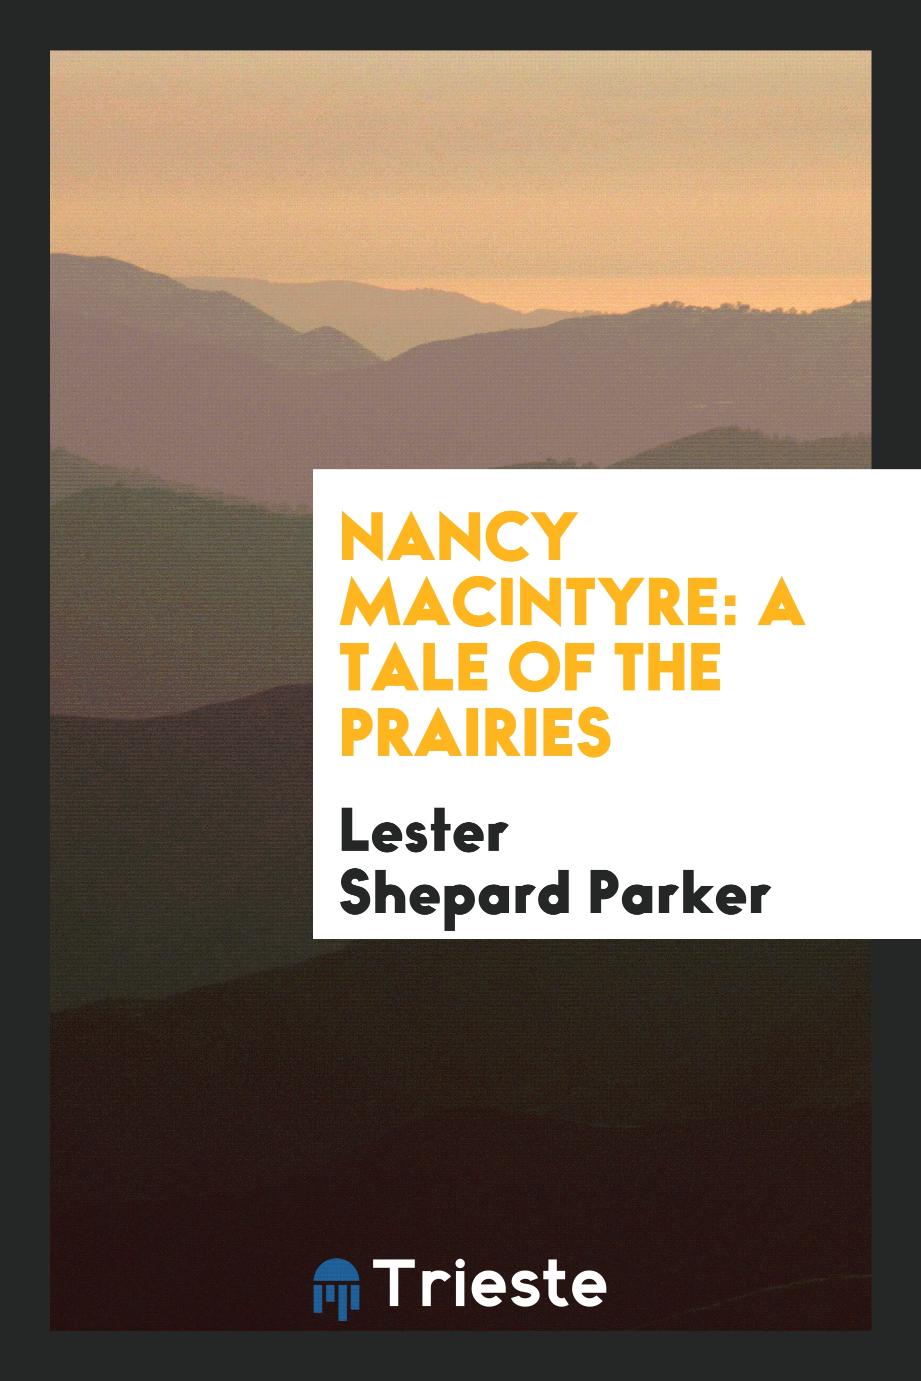 Nancy MacIntyre: A Tale of the Prairies